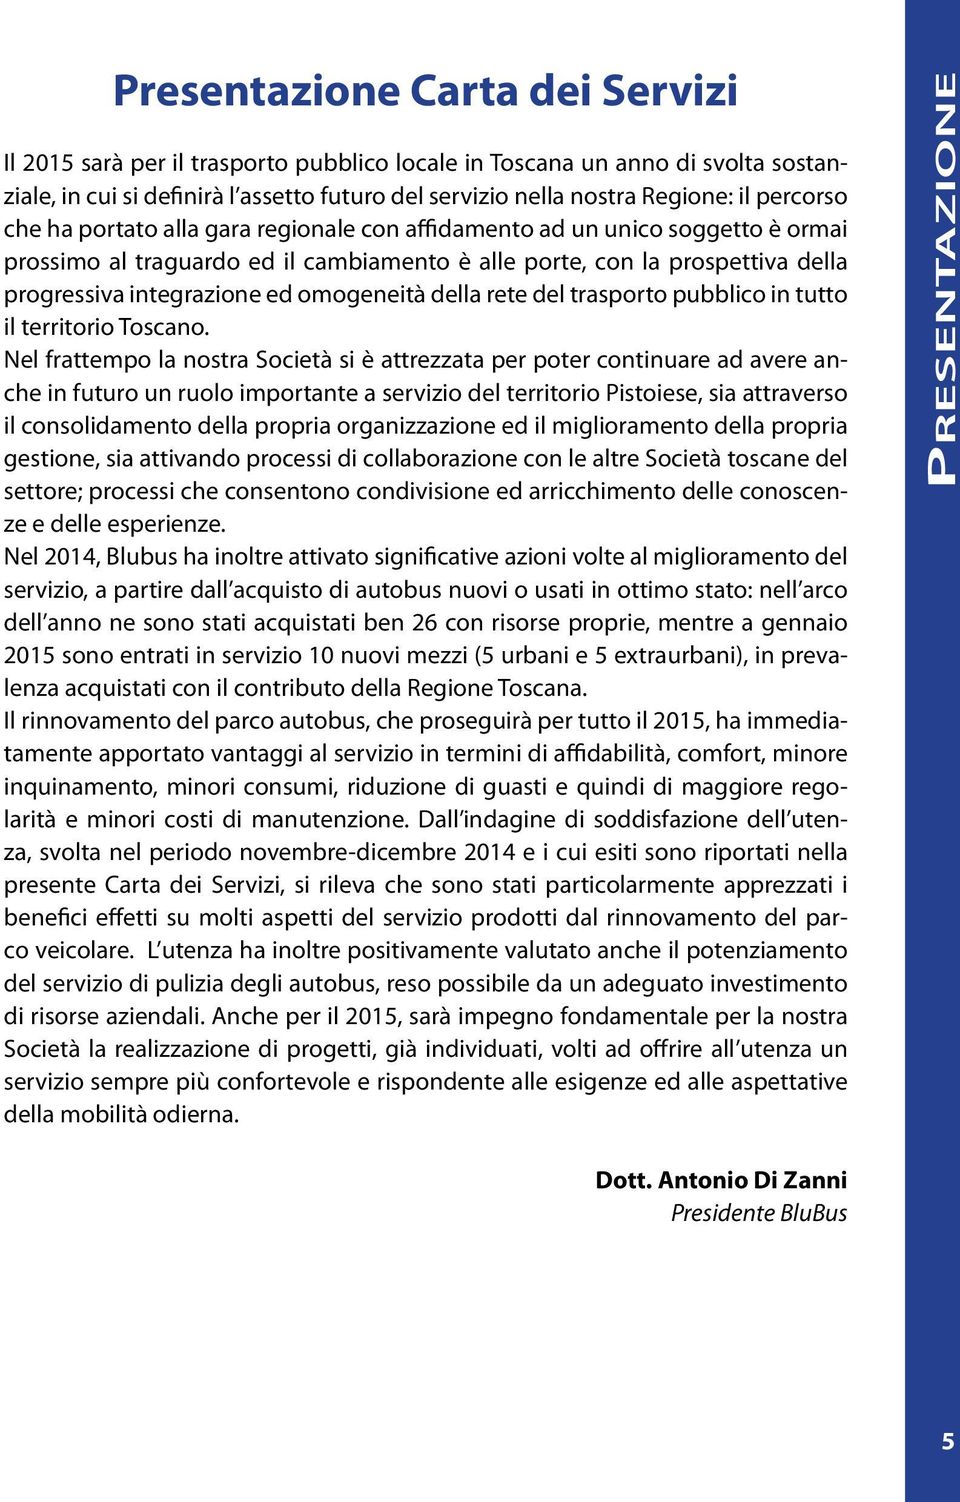 omogeneità della rete del trasporto pubblico in tutto il territorio Toscano.